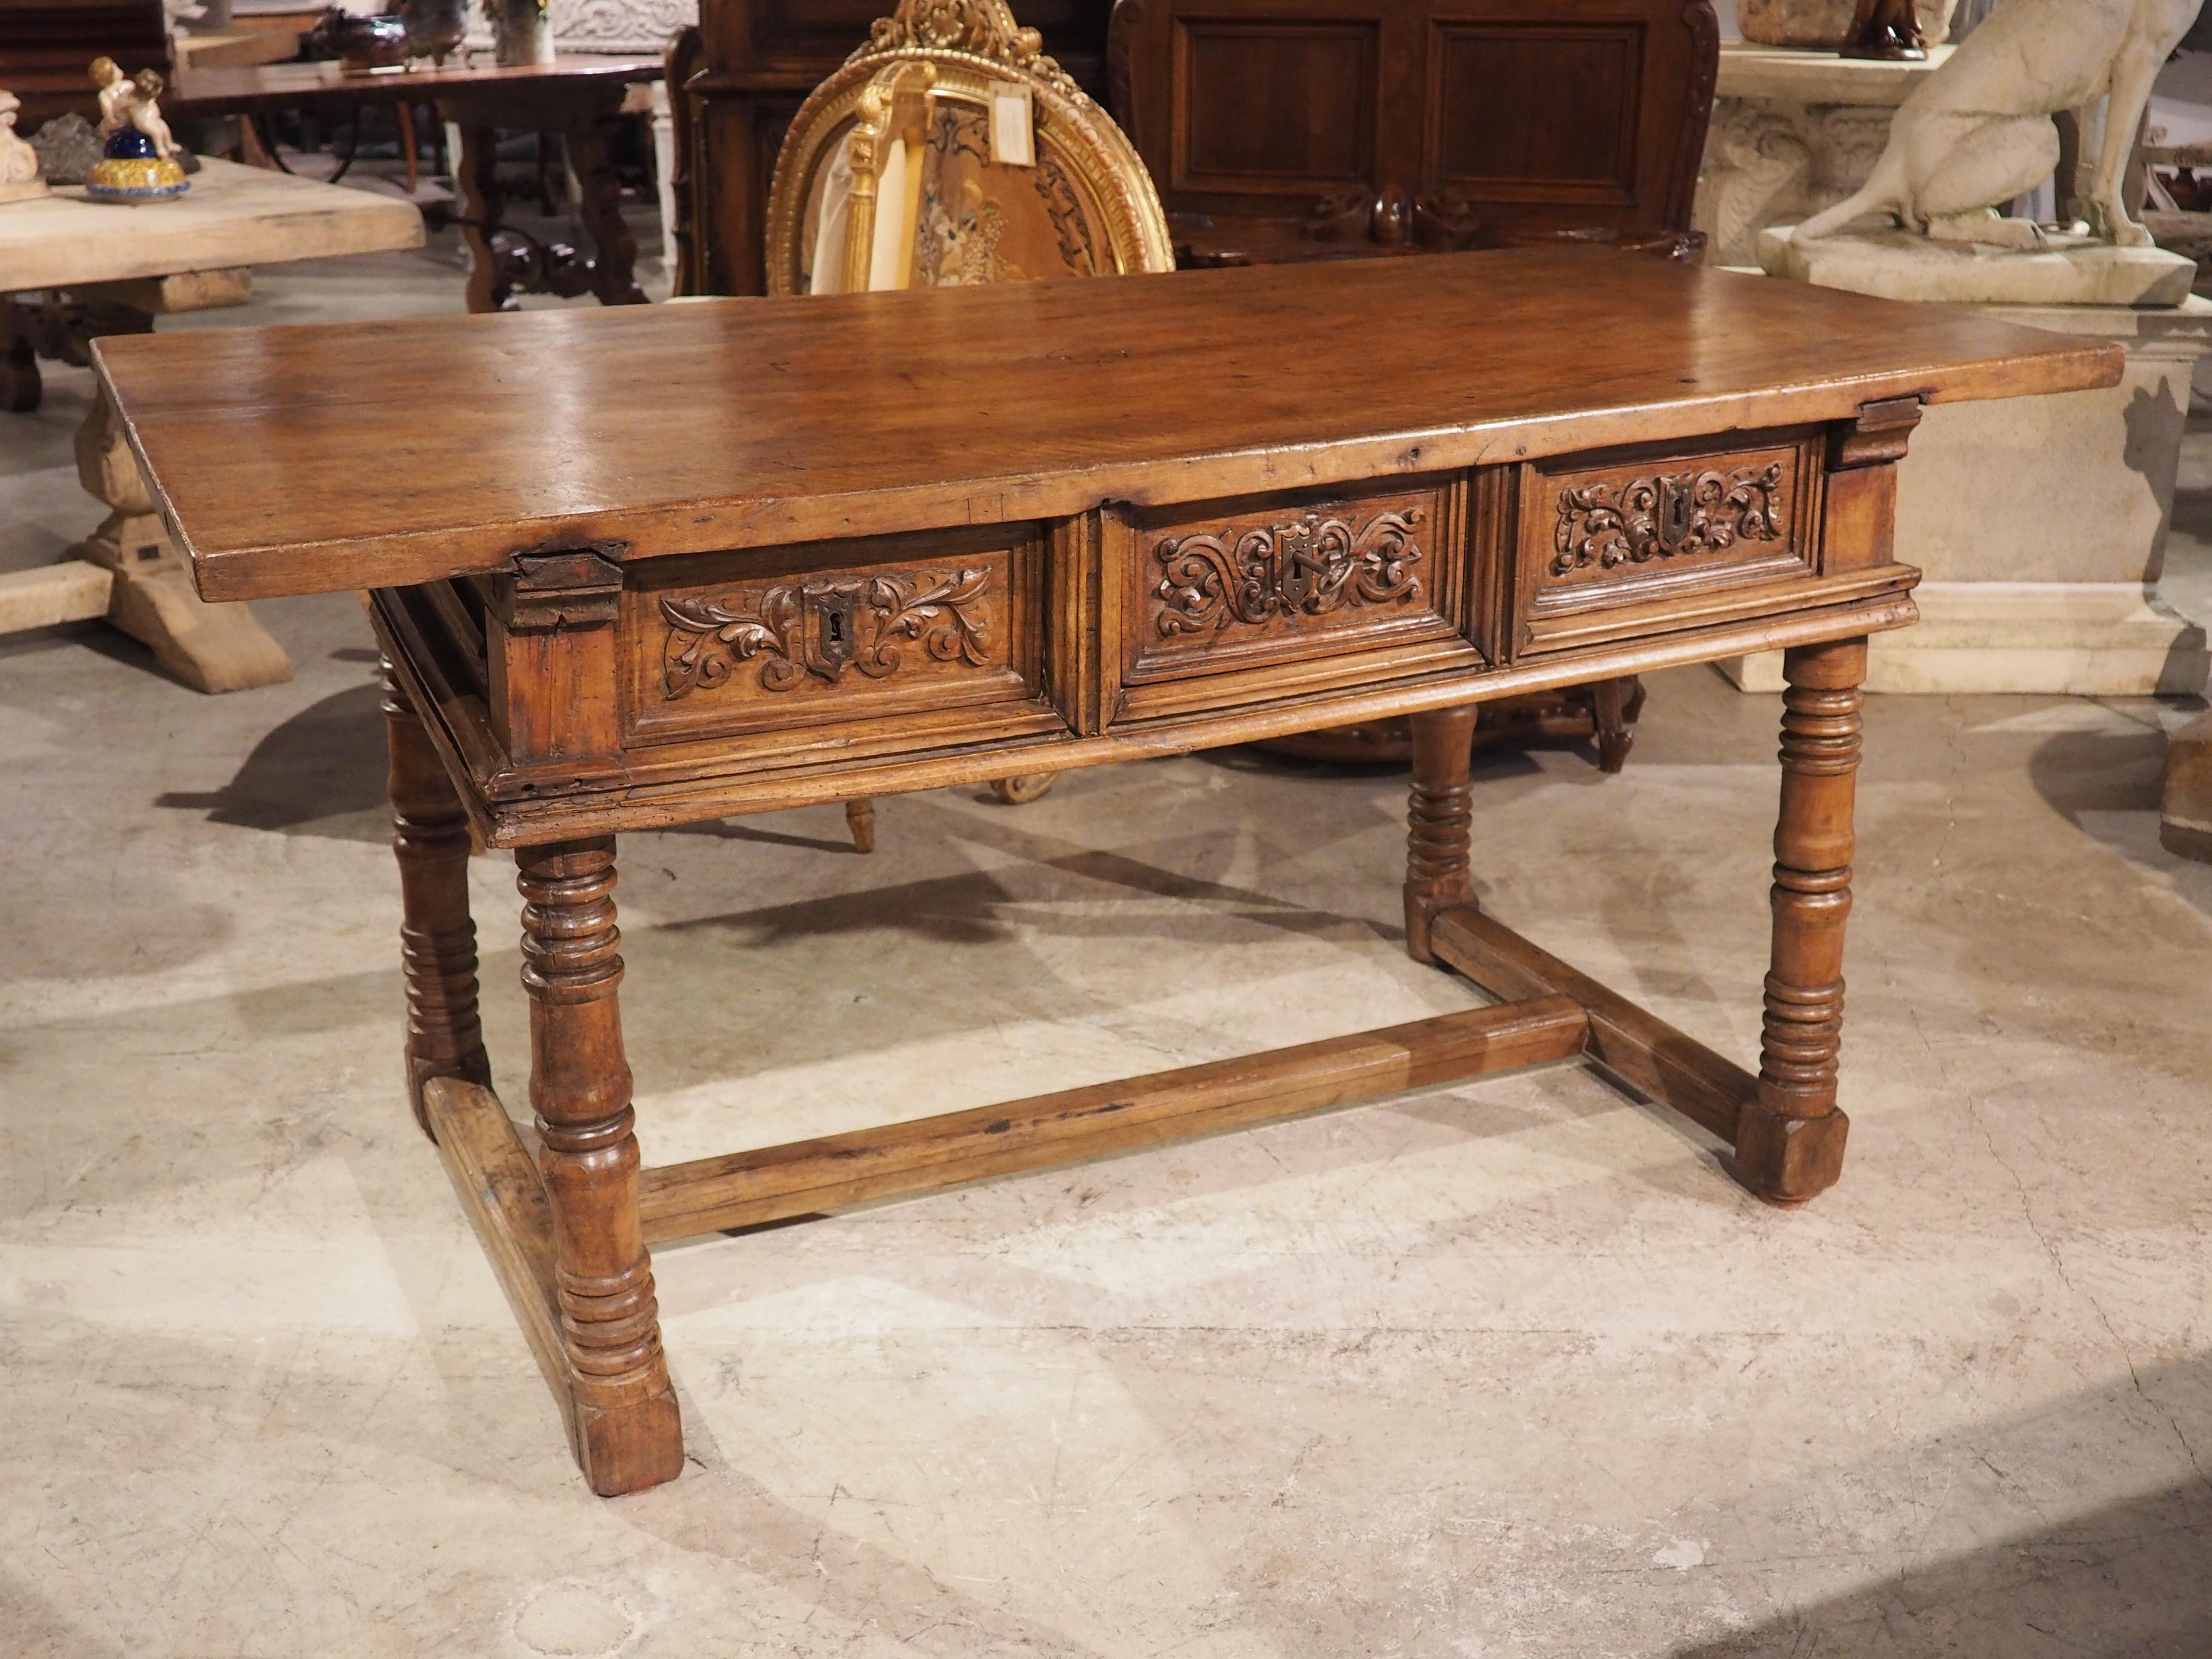 Cette table en bois d'Espagne, d'une grande beauté, a été sculptée à la main à la fin de la Renaissance (dans les années 1600). Comme c'est le cas pour la plupart des tables de la Renaissance espagnole, le plateau en planches simples de 1 ½